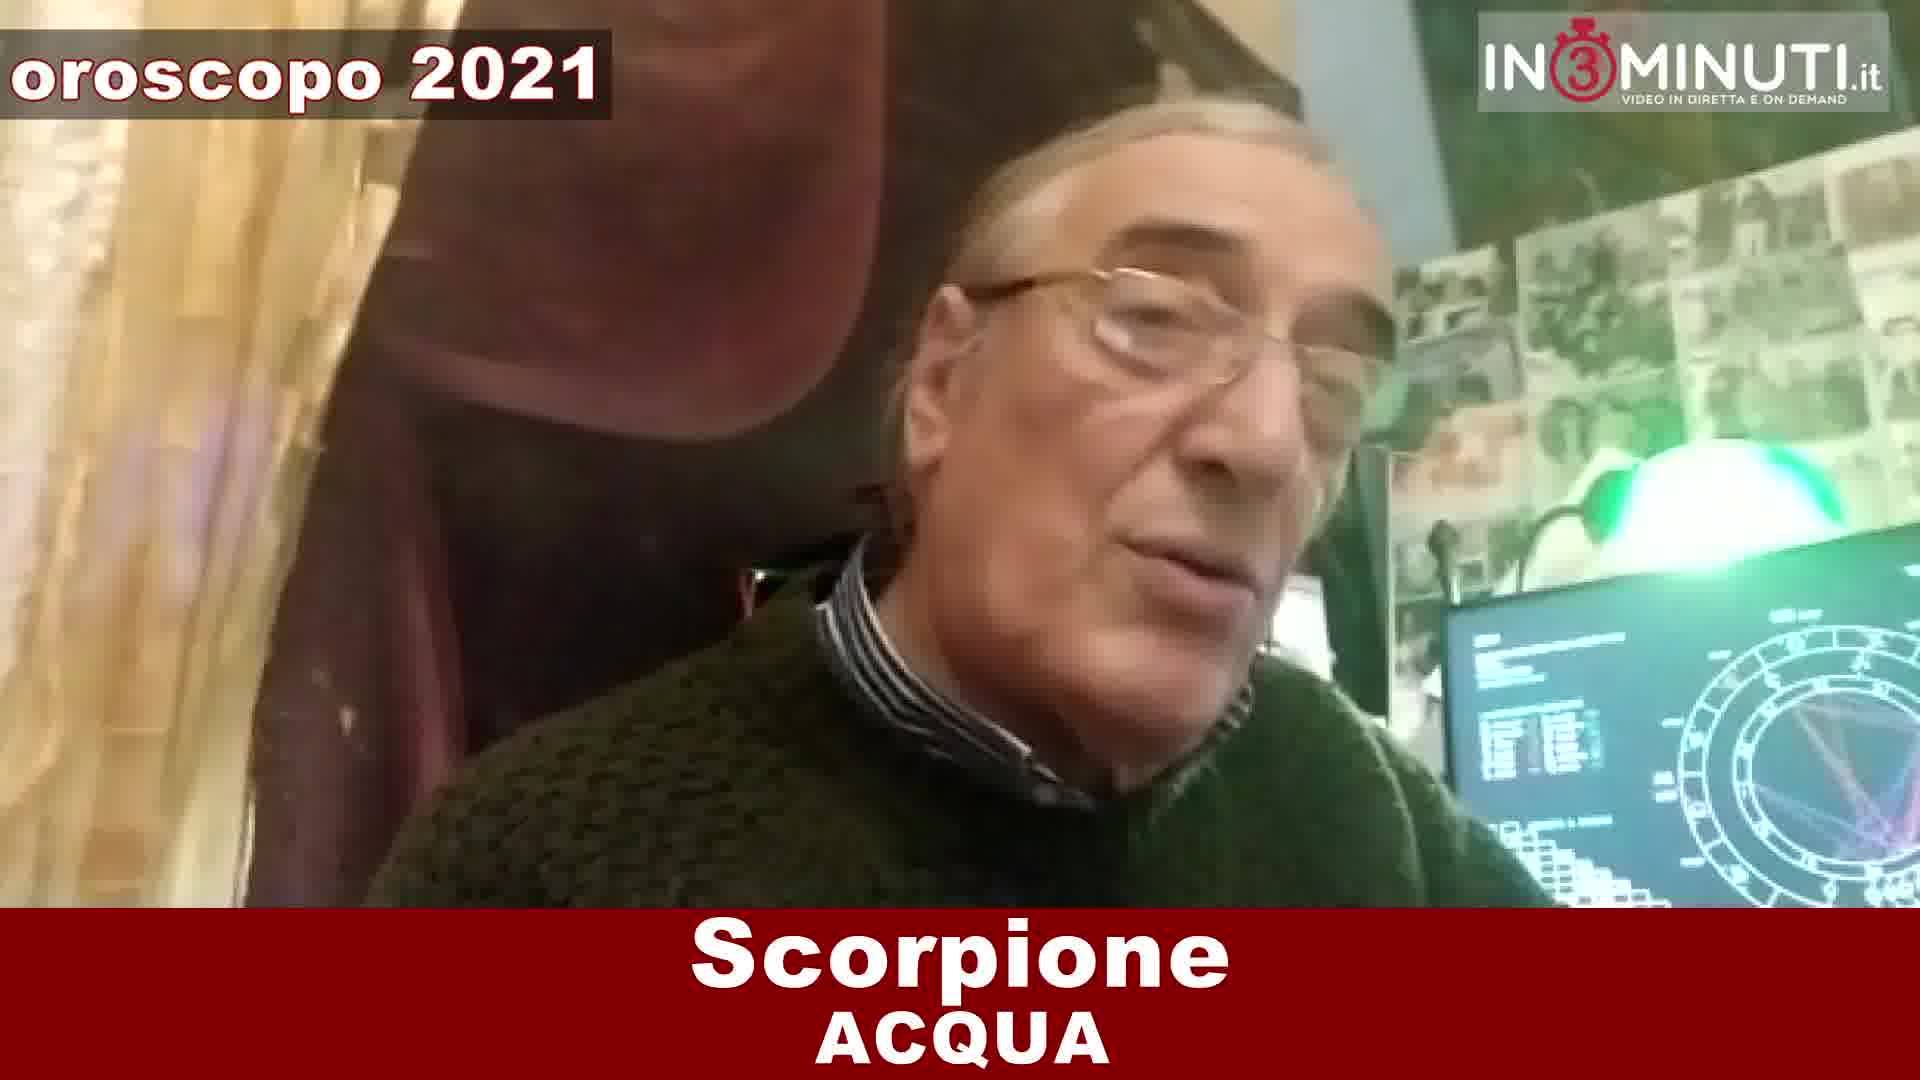 OROSCOPO 2021 ACQUA, Cancro, Scorpione, Pesci, di Alfonso Bellavia 📹VIDEO